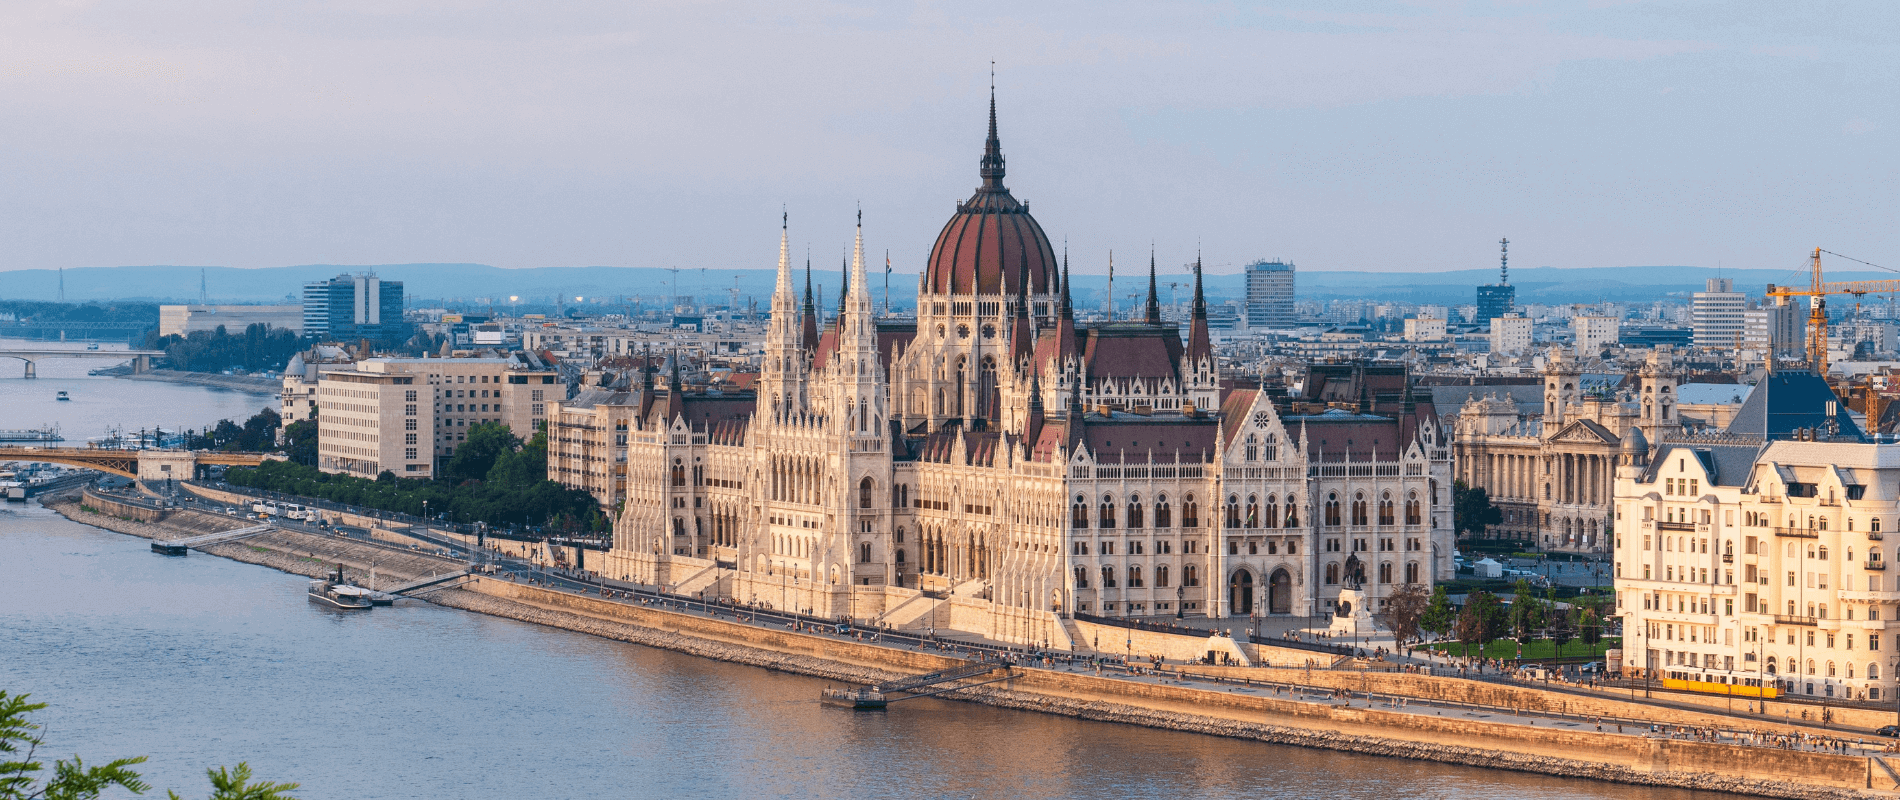 Hungary Travel